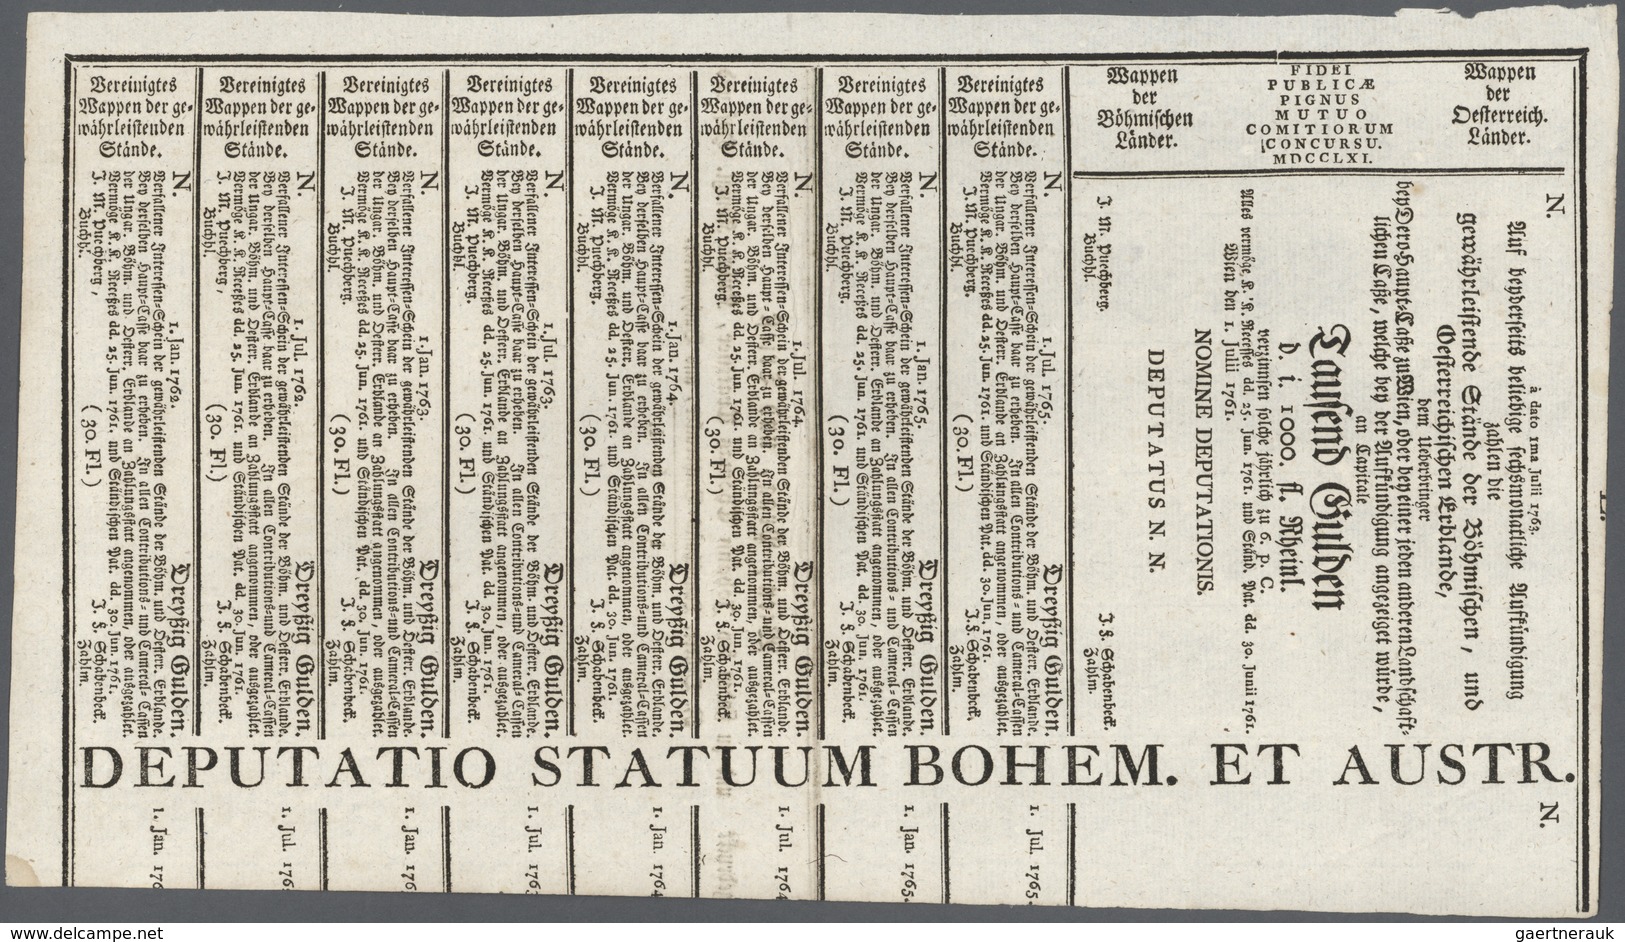 01058 Austria / Österreich: 1000 Gulden 1761 Obligation Vienna, PR W3c), Complete Sheet In Condition: VF. - Oesterreich